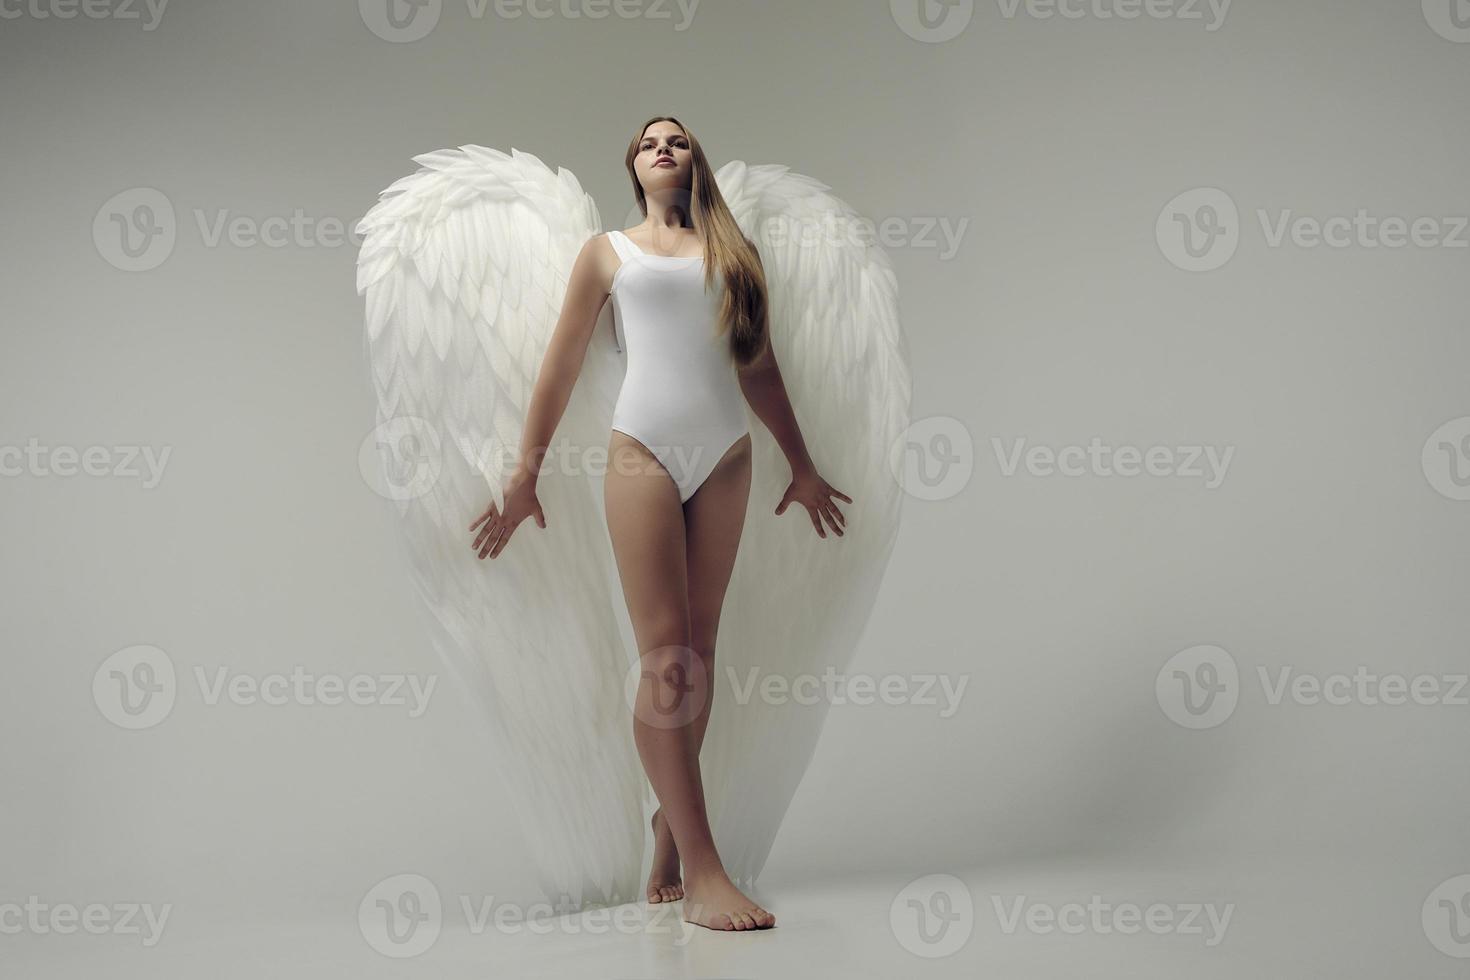 une fille ange romantique dans un body blanc avec des ailes blanches photo